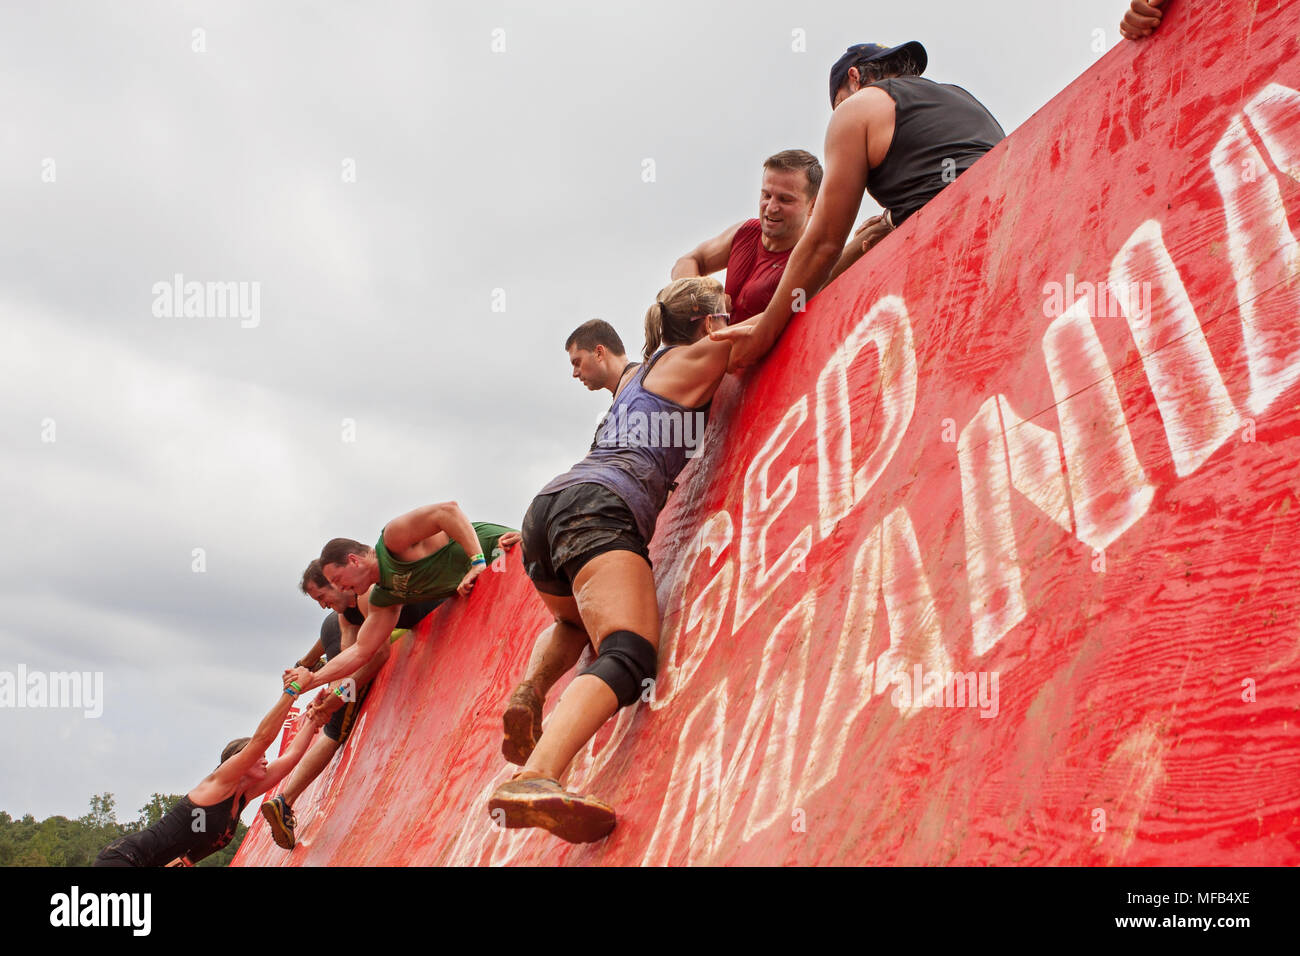 Wettbewerber kämpfen bis zu einer Wand ein wenig Hilfe von anderen Teilnehmern bekommen an der robusten Maniac Ereignis am 22. August 2015 in Atlanta, GA, Klettern. Stockfoto